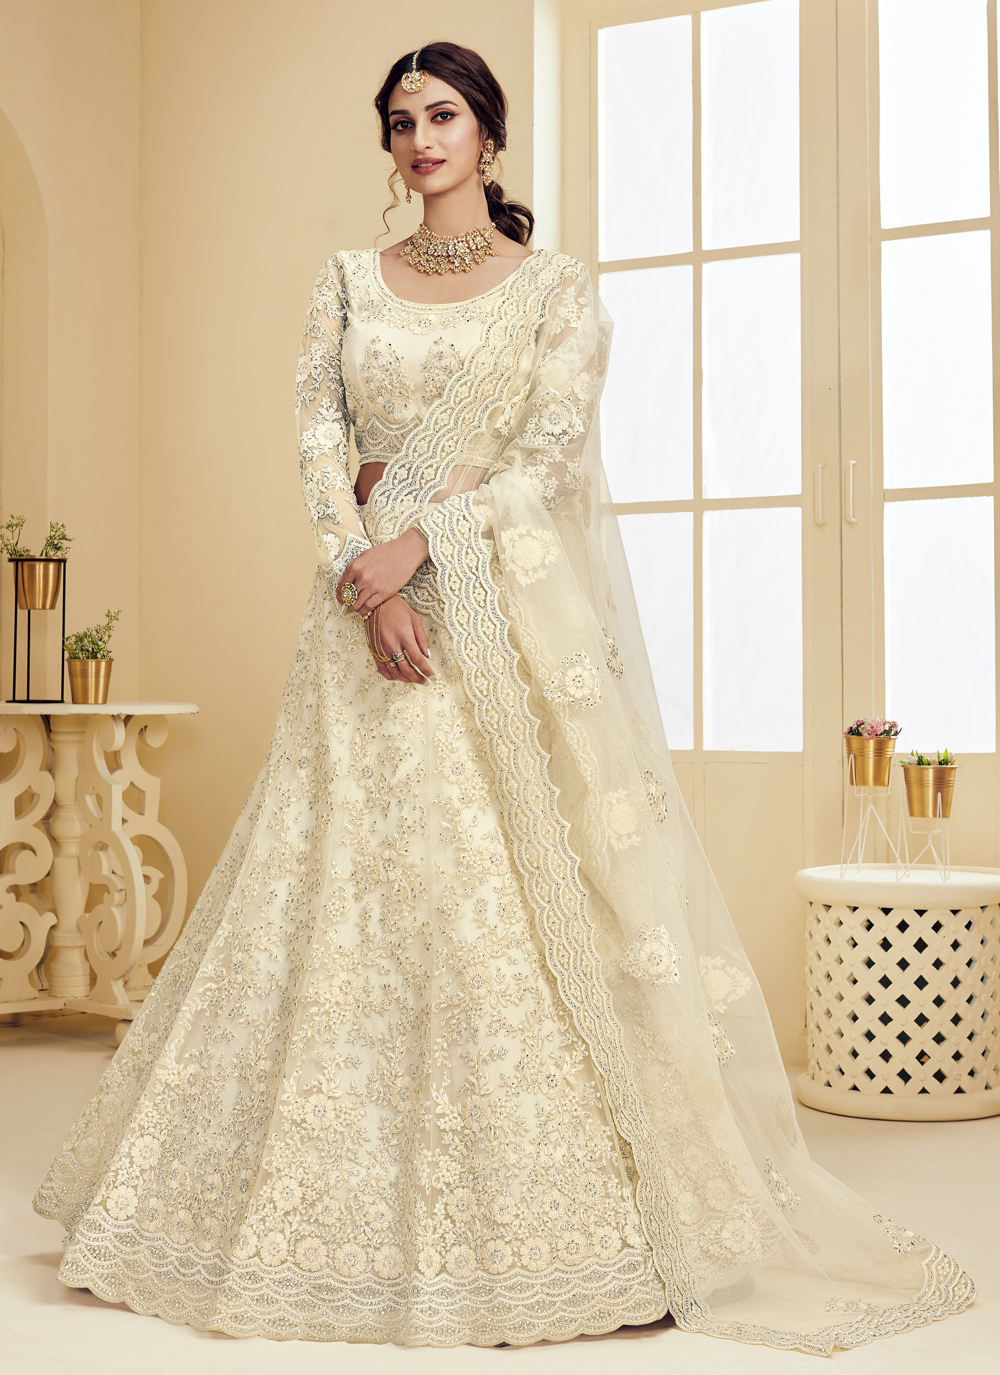 Yankita Kapoor Stylish White Color Wedding Bridal Lehenga Choli